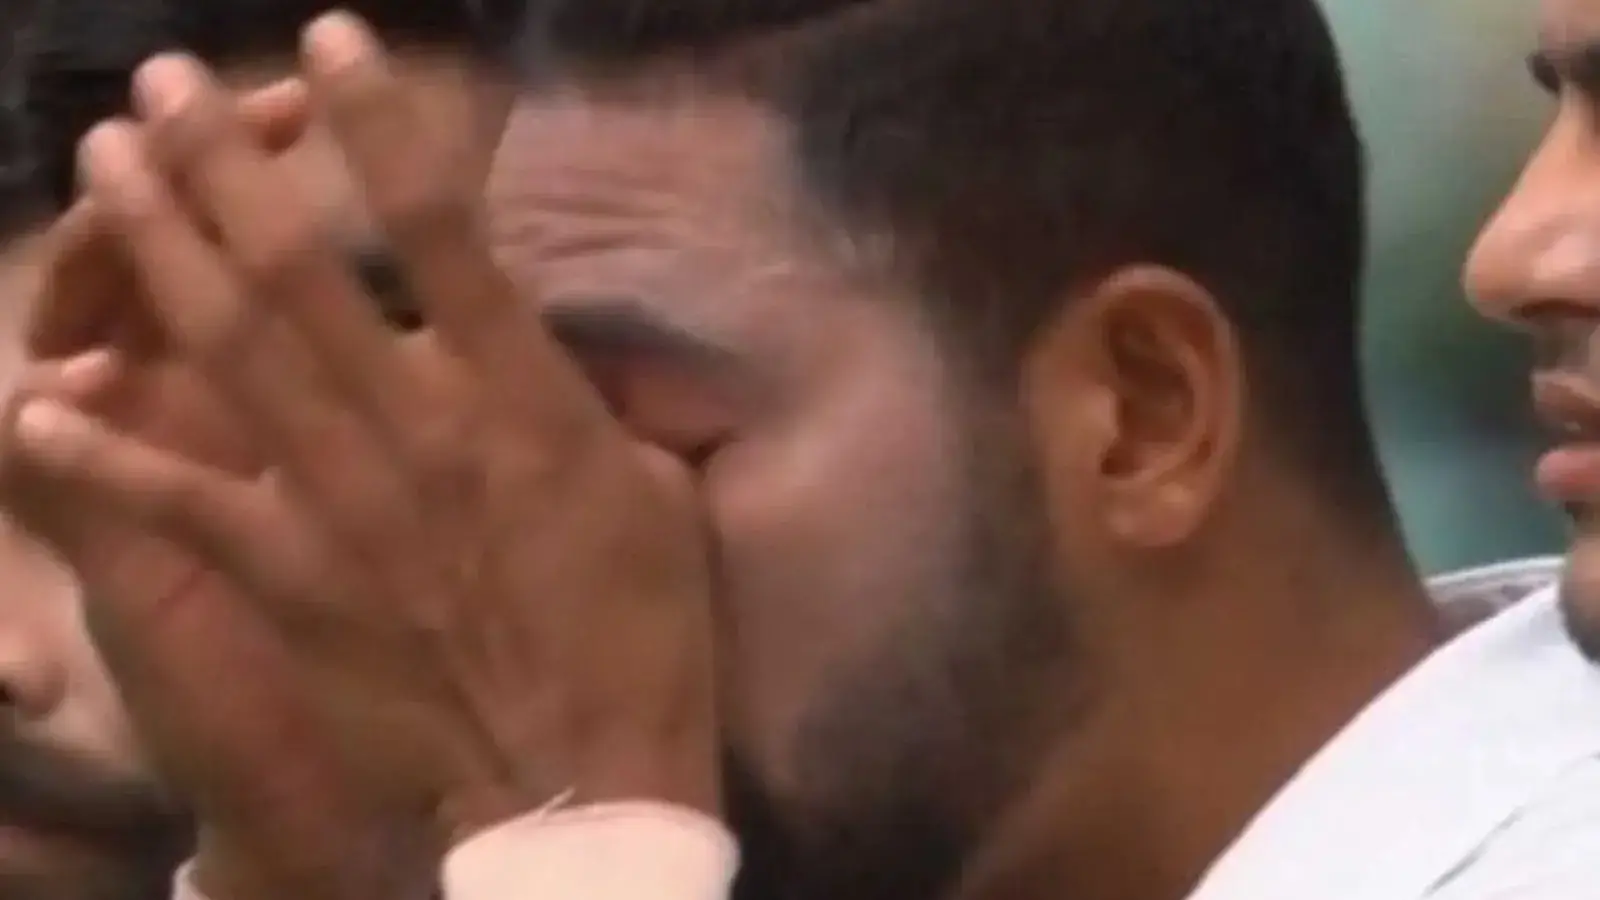  'मैं मोहम्मद सिराज के पास गया और उनके गालों पर आंसू छलक पड़े': पाइन |  क्रिकेट
